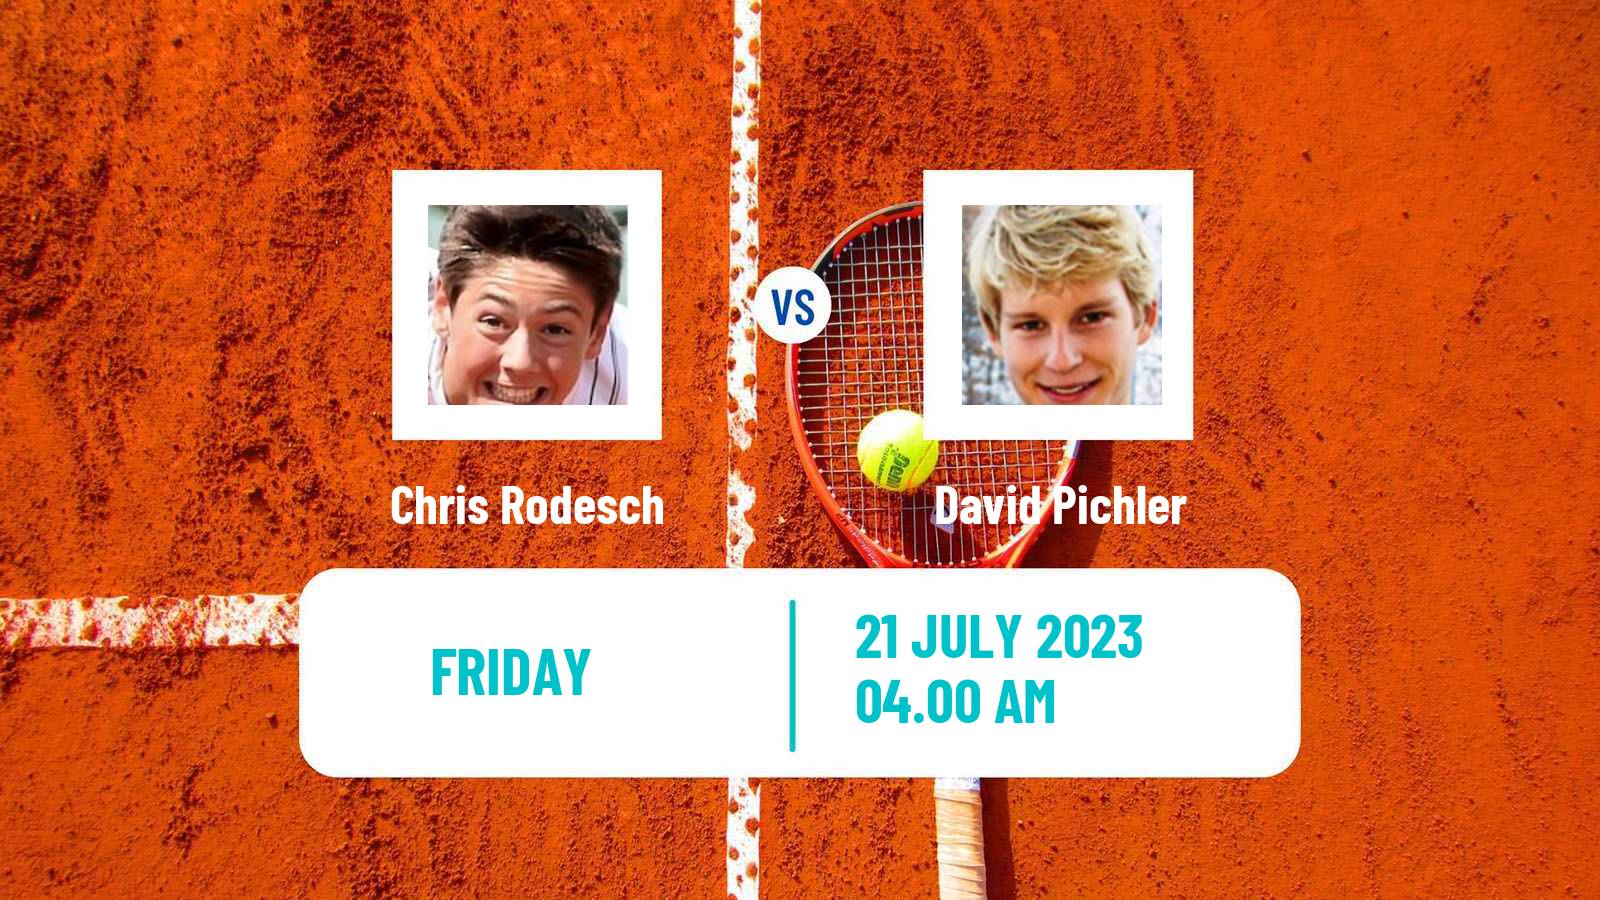 Tennis ITF M25 Esch Alzette 2 Men Chris Rodesch - David Pichler